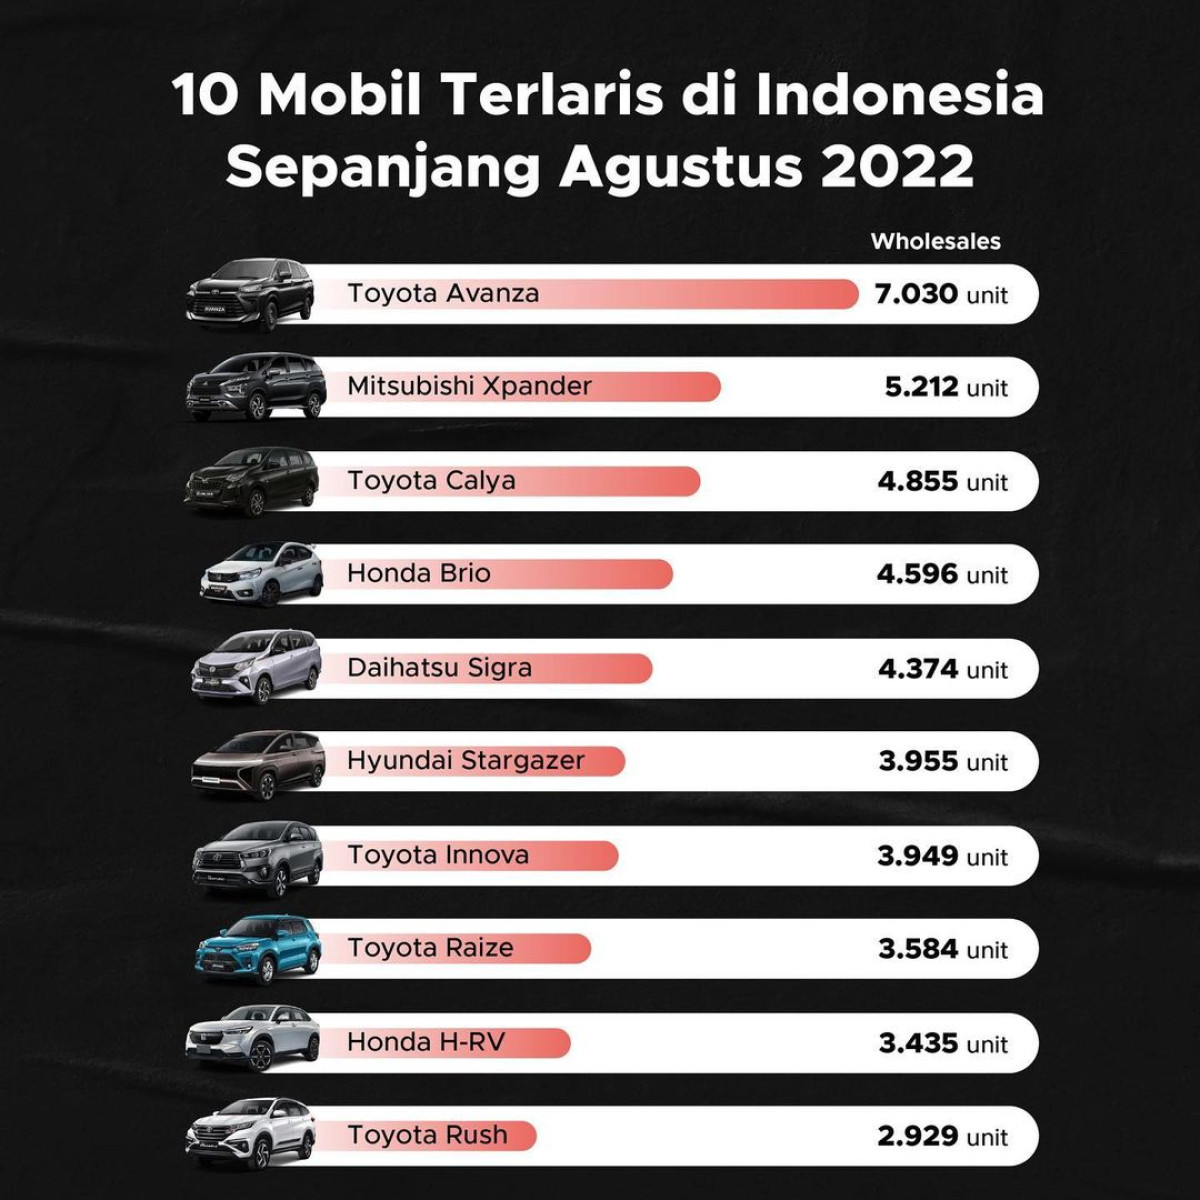 Mobil Terlaris di Indonesia Sepanjang Agustus 2022